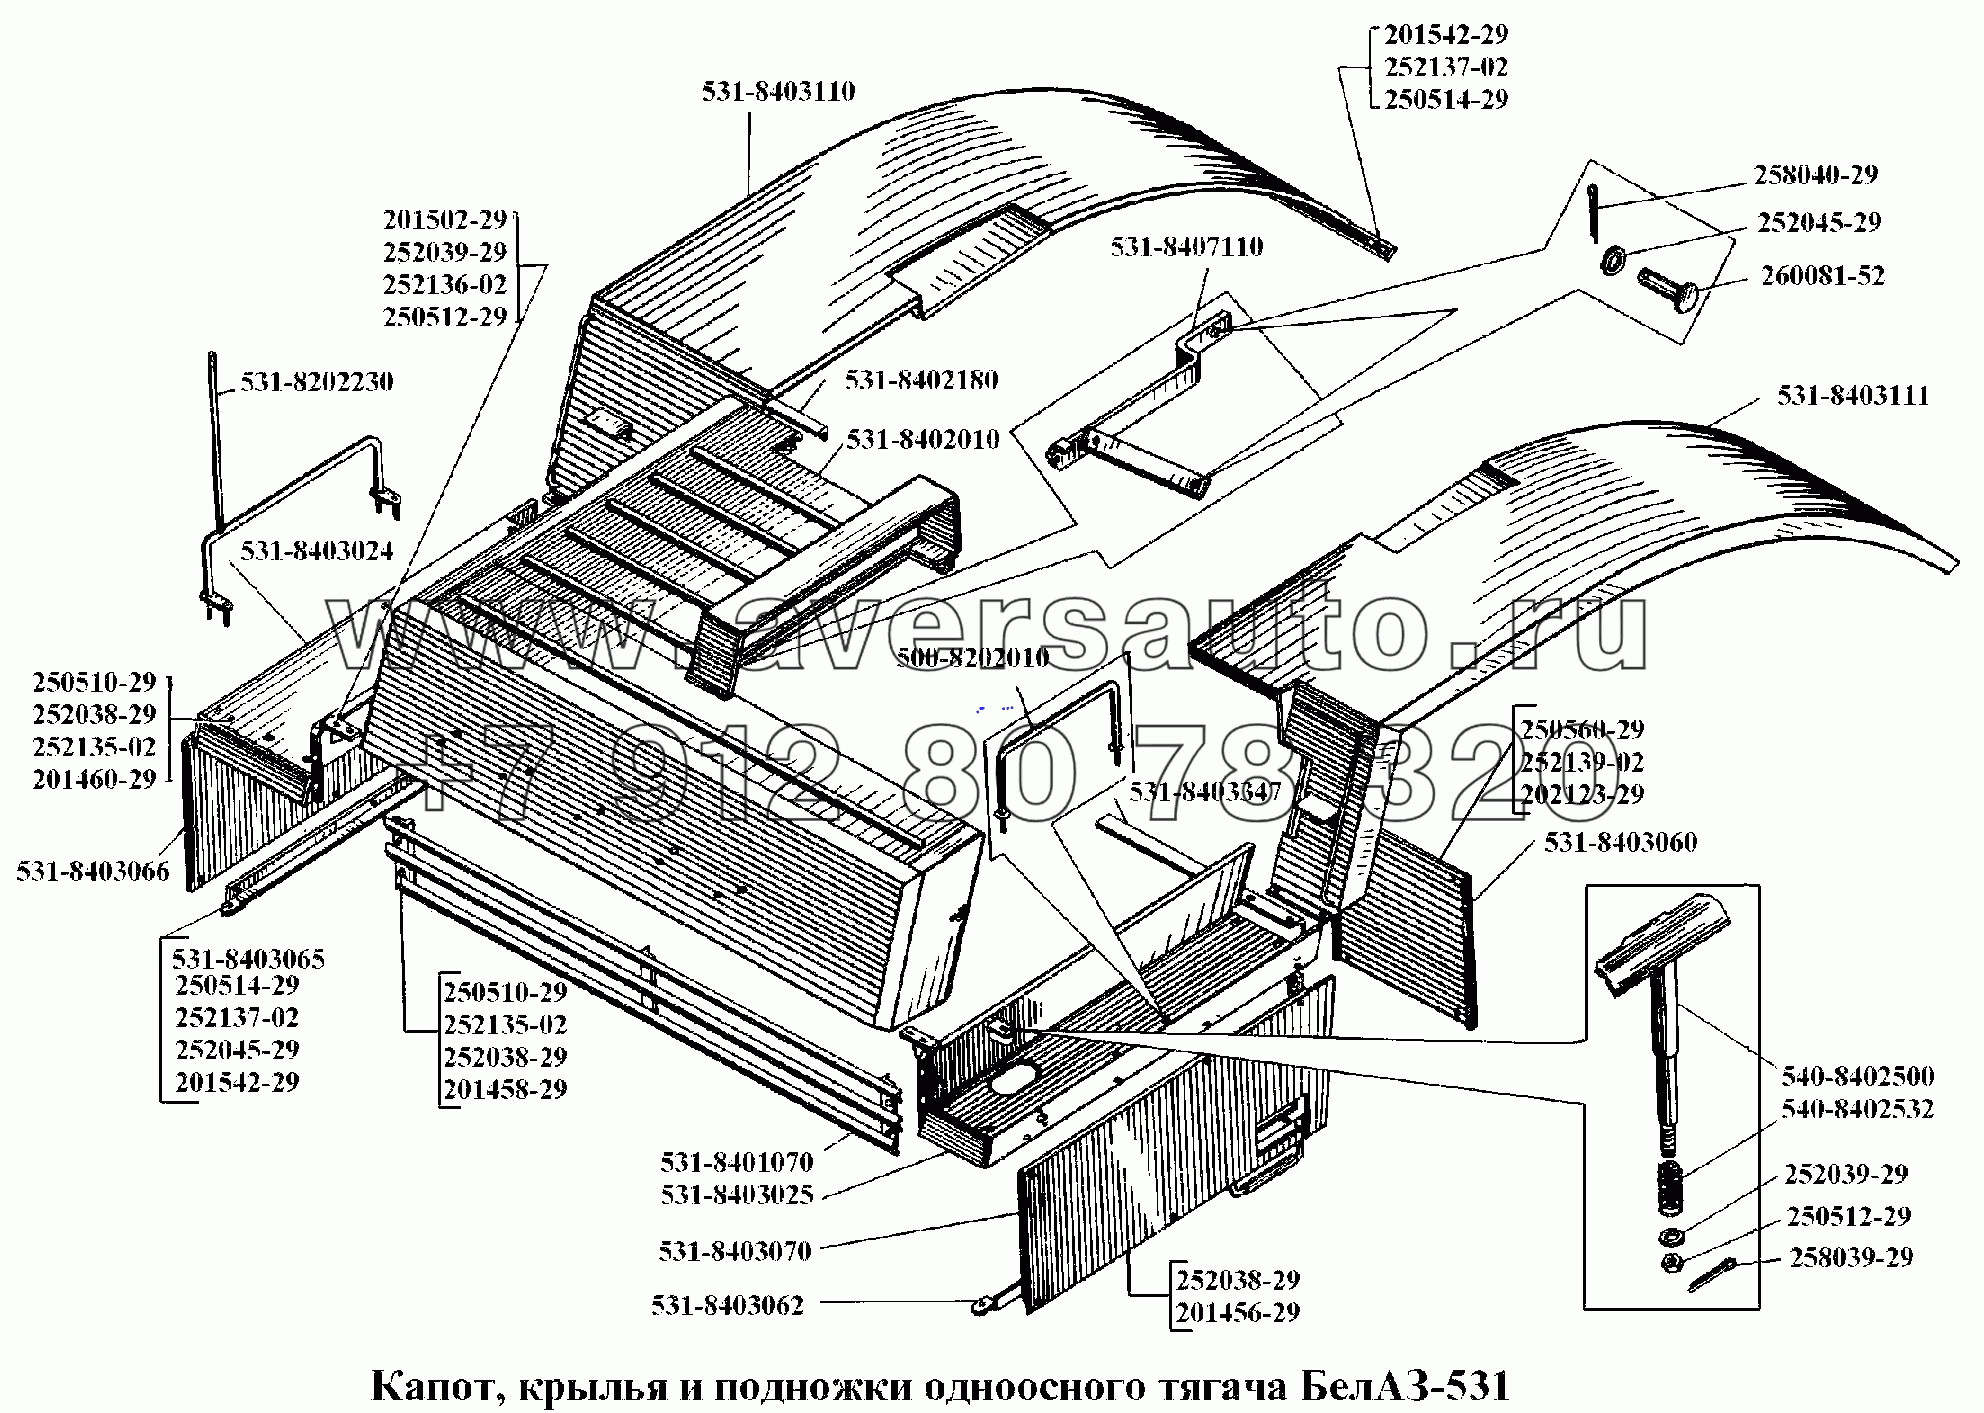 Капот, крылья и подножки одноосного тягача БелАЗ-531